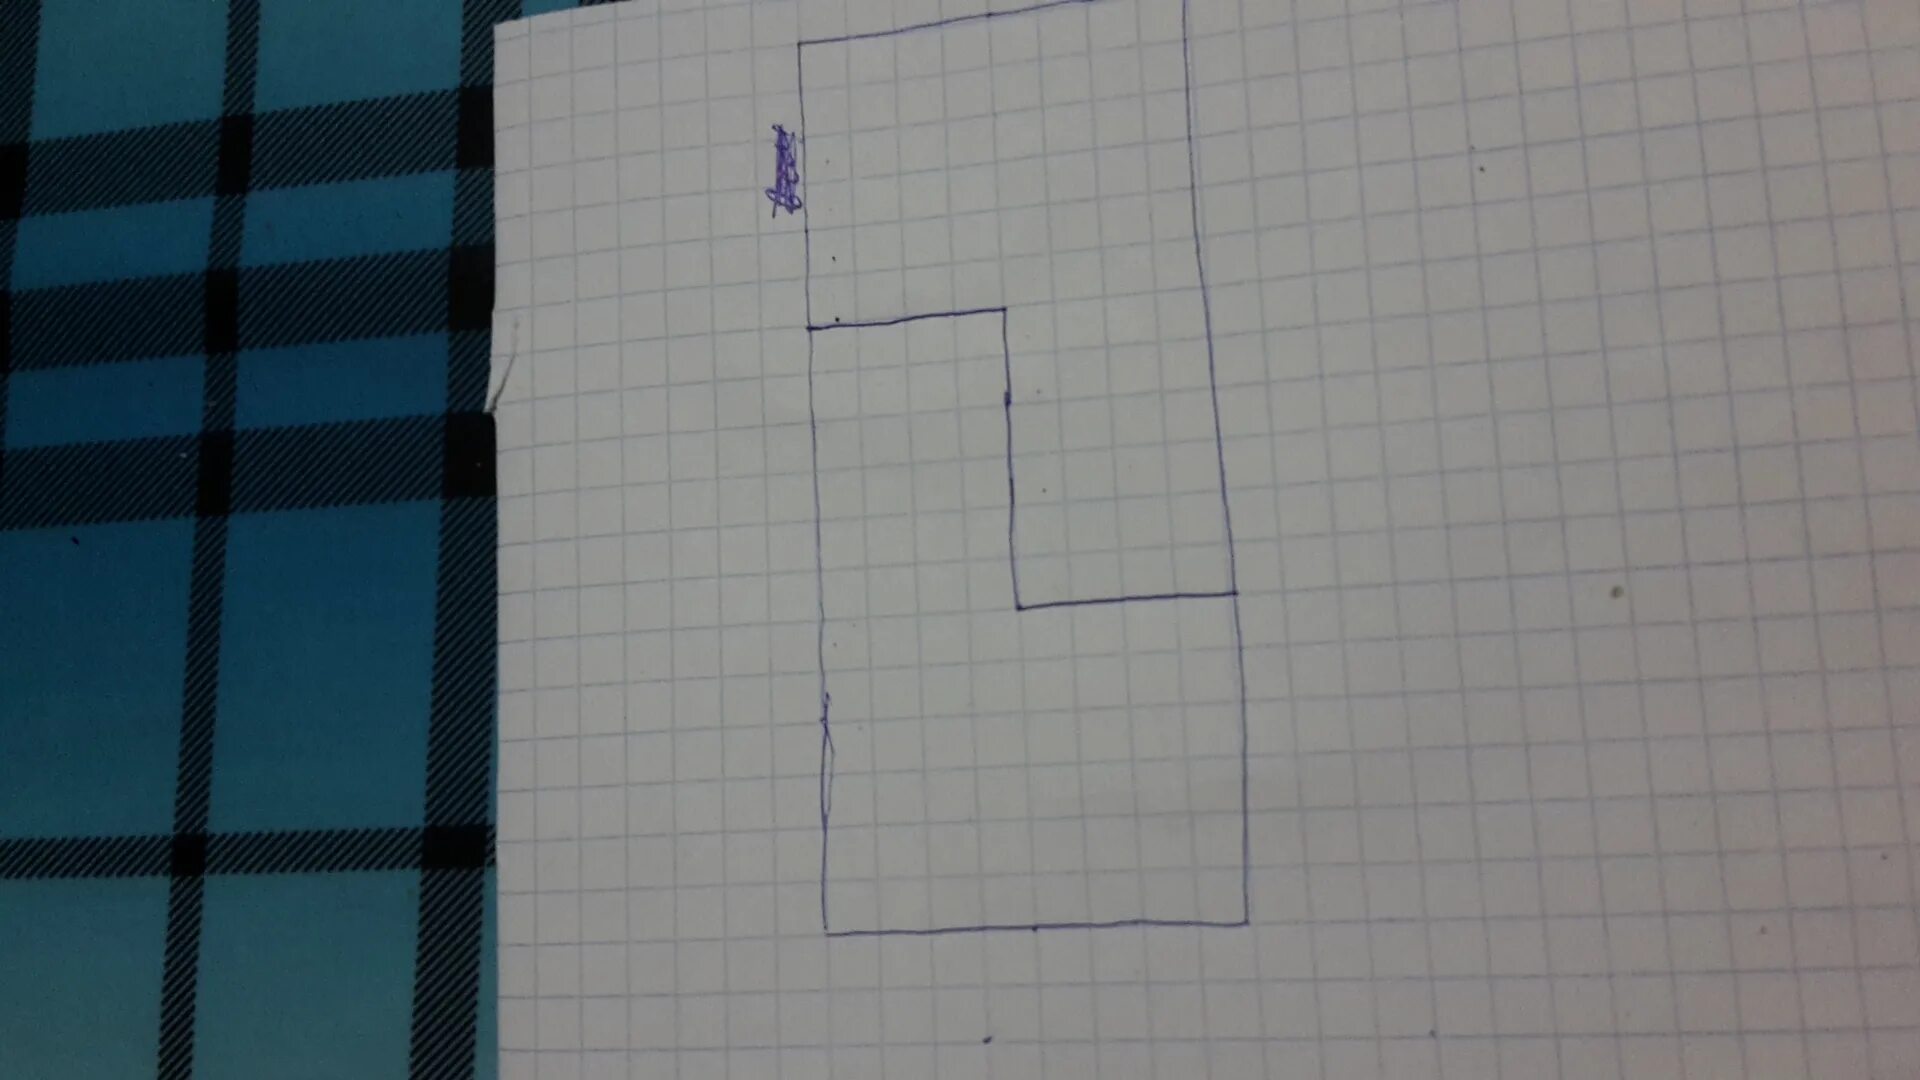 Вырезание прямоугольников на бумаге. Прямоугольник разрезали на 4 части. Разрезать прямоугольник чтобы сложить квадрат. Разрезать прямоугольник на реугольникиварианты. Прямоугольник разрезали на 6 прямоугольников